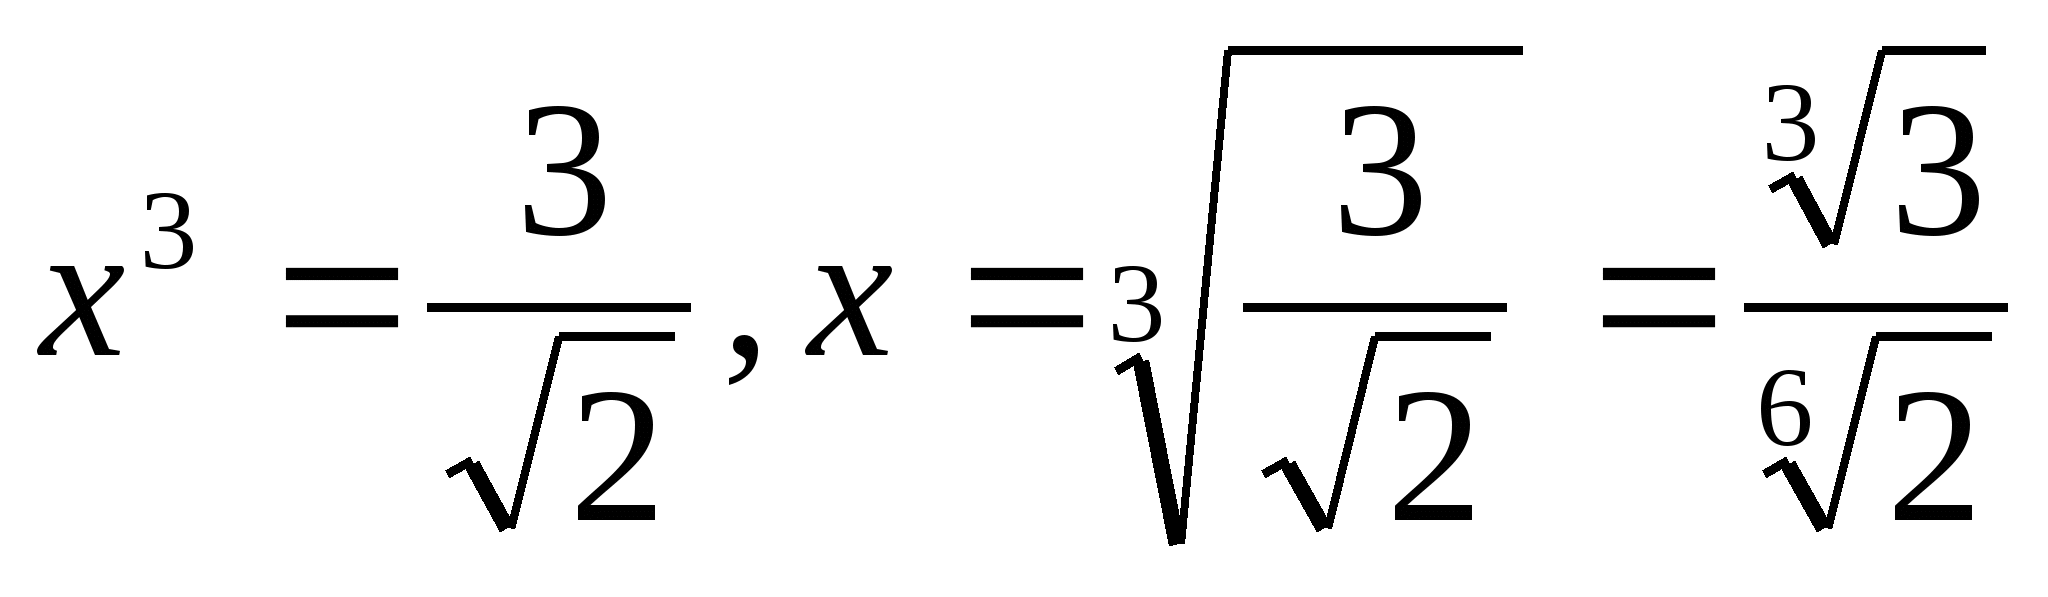 Исследовательская работа по математике Кубическое уравнение и методы его решения